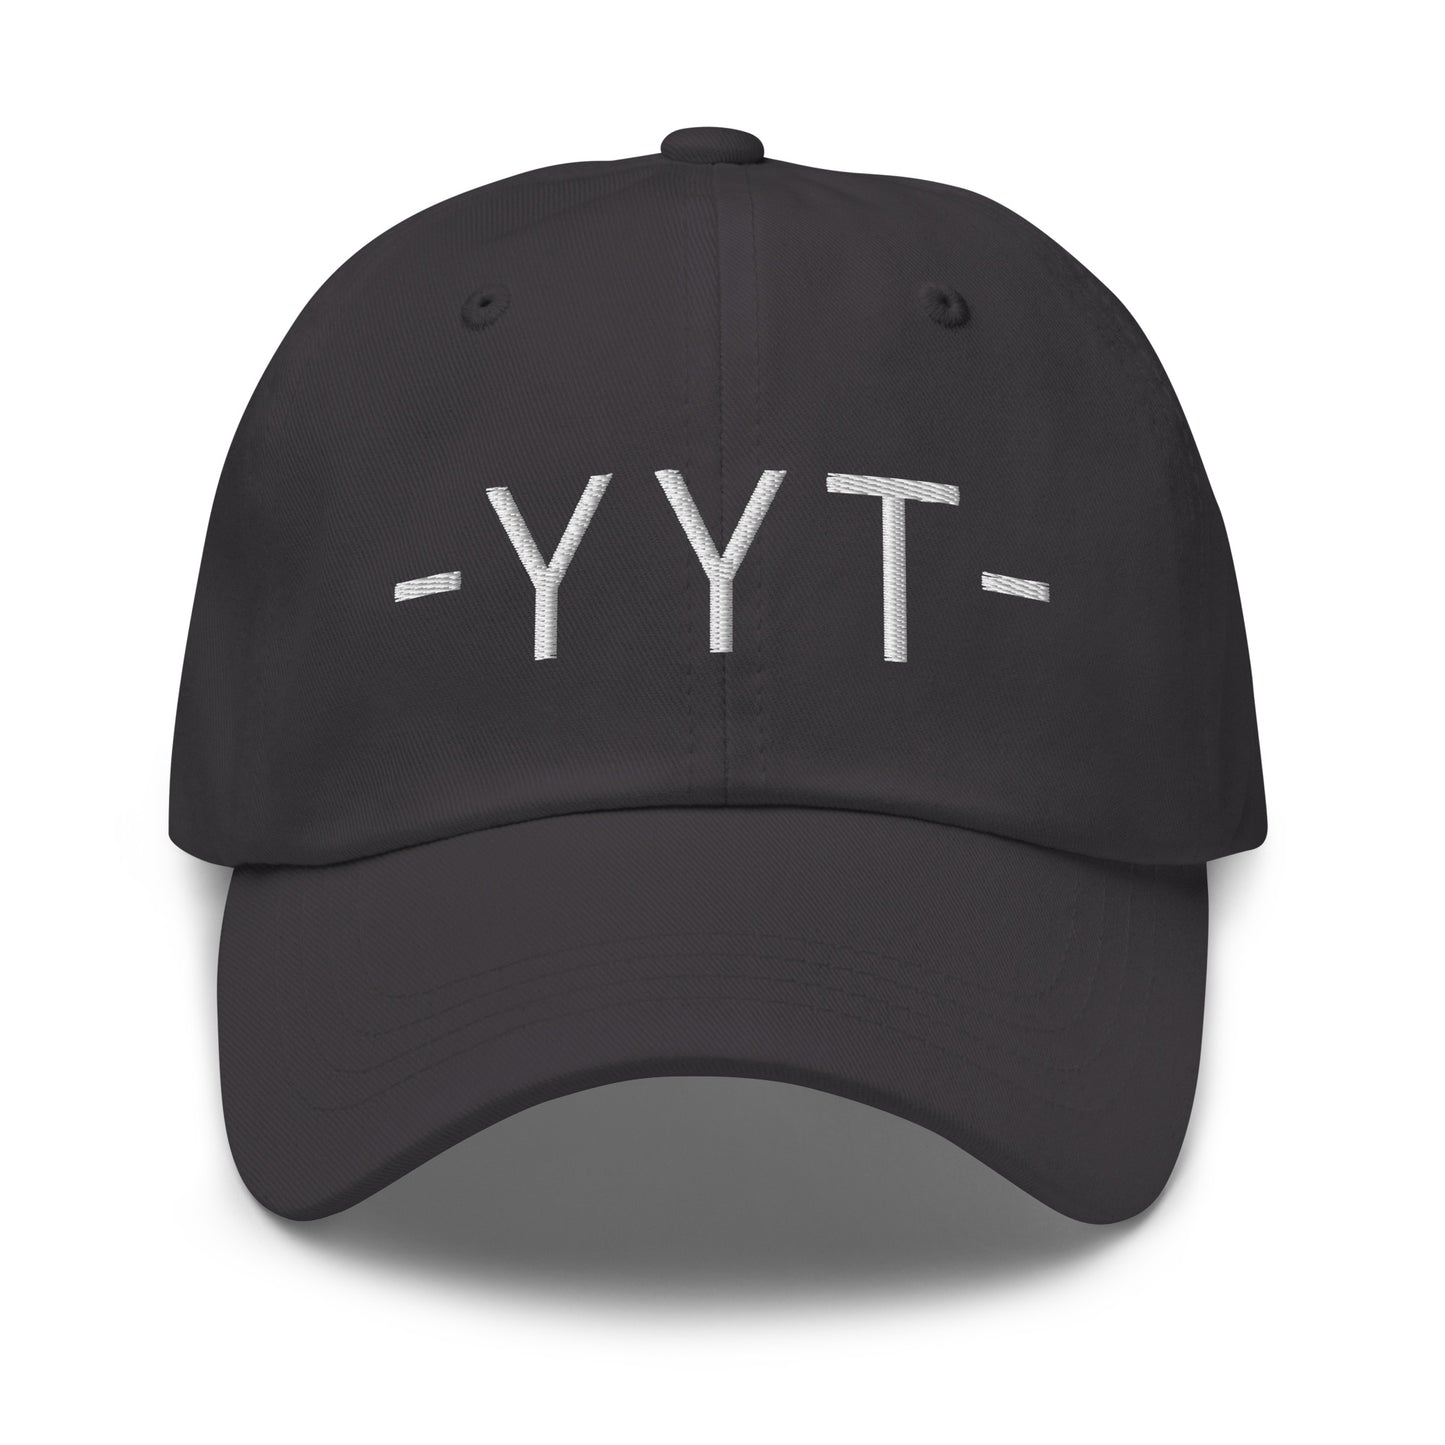 Souvenir Baseball Cap - White • YYT St. John's • YHM Designs - Image 19